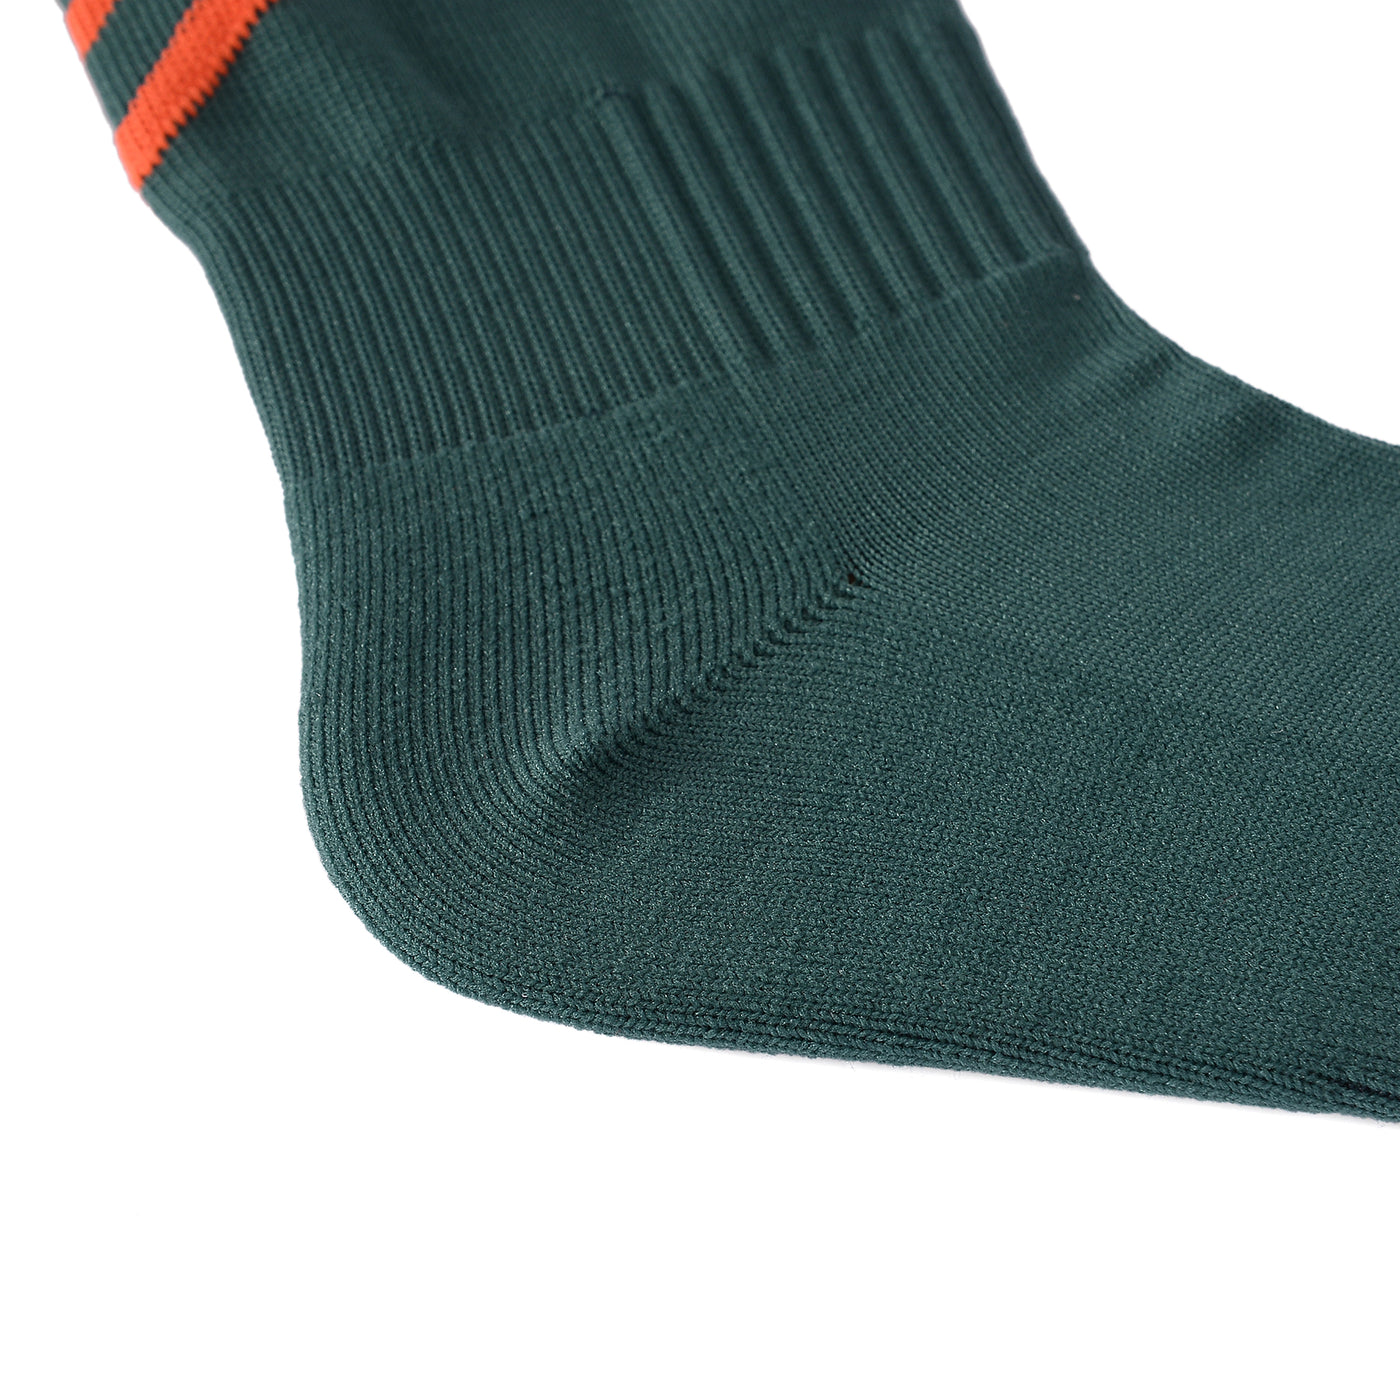 8 Pairs Coolmax Professional Football Socks